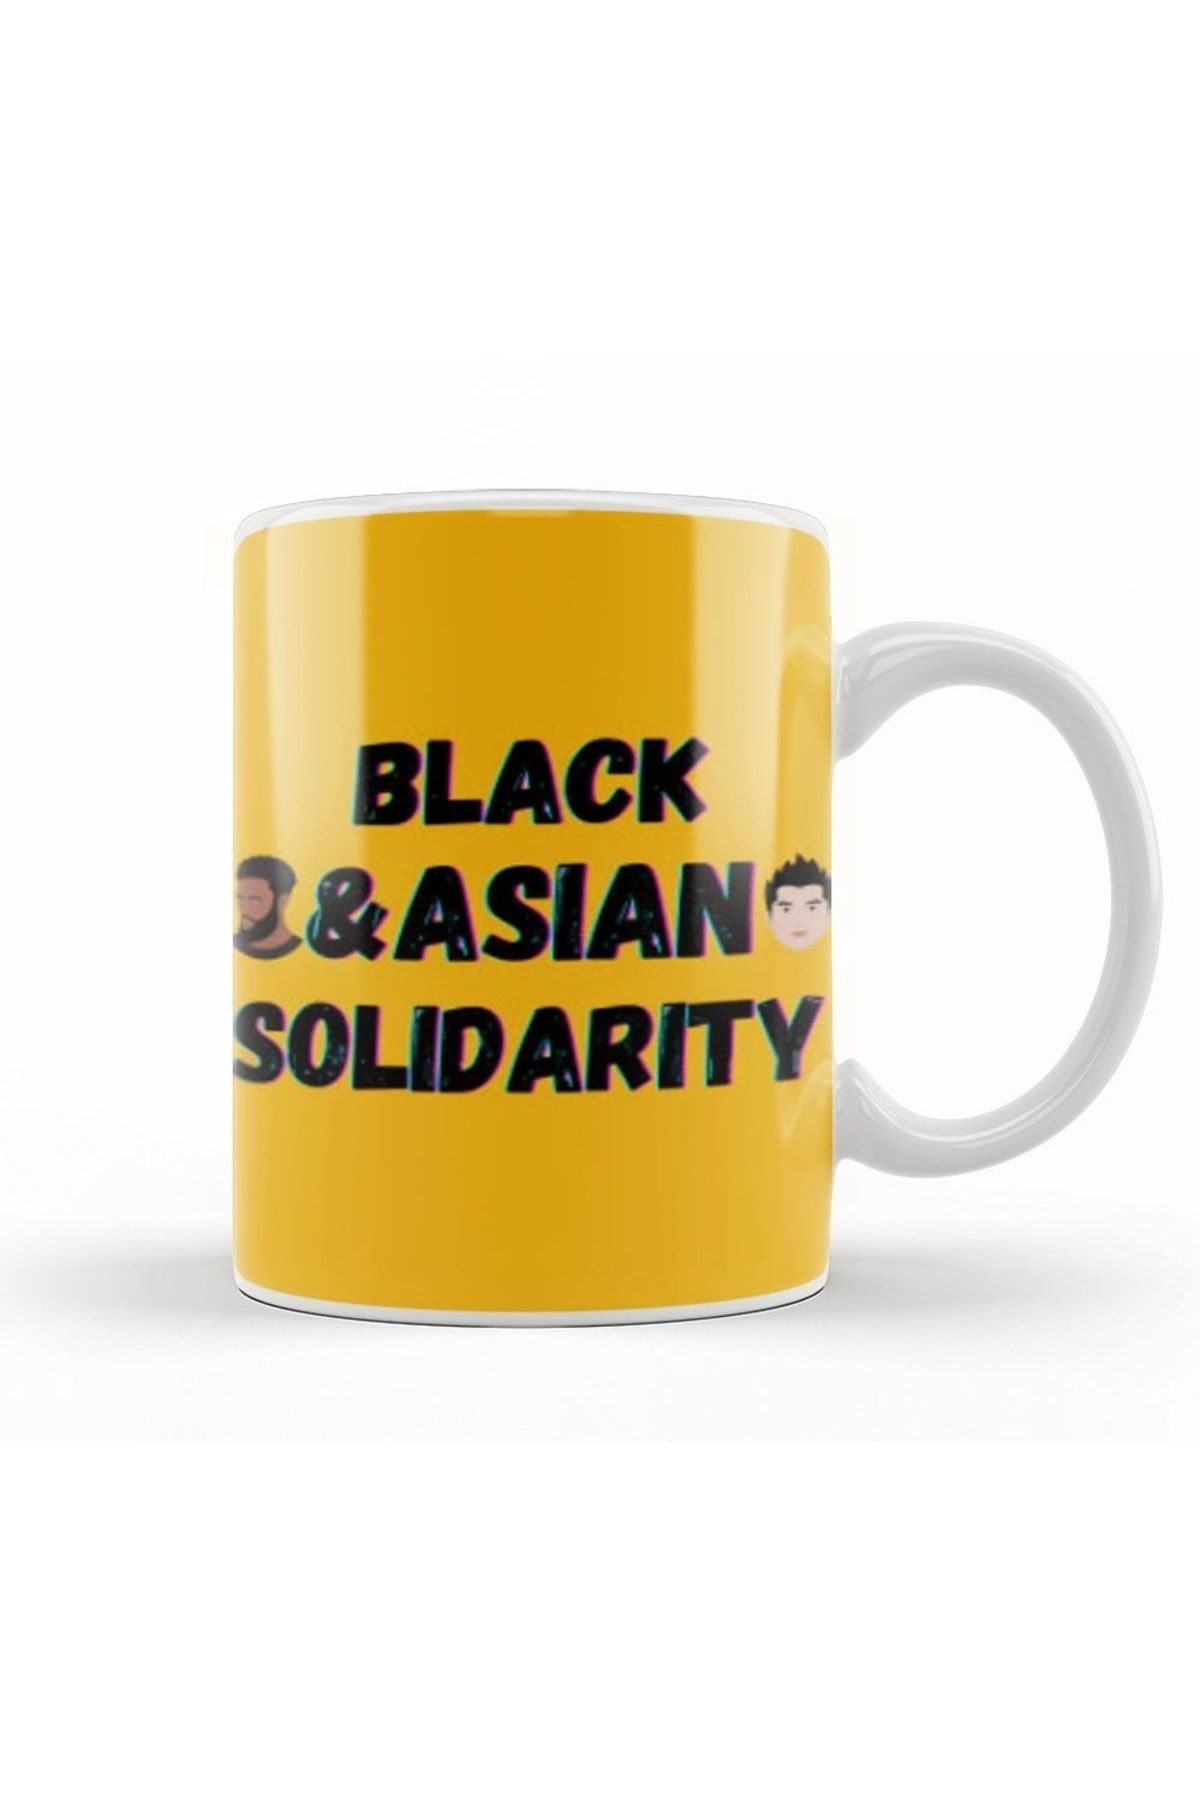 Humuts Black Asian Solidarity Stop Aapı Hate Kupa Bardak Porselen